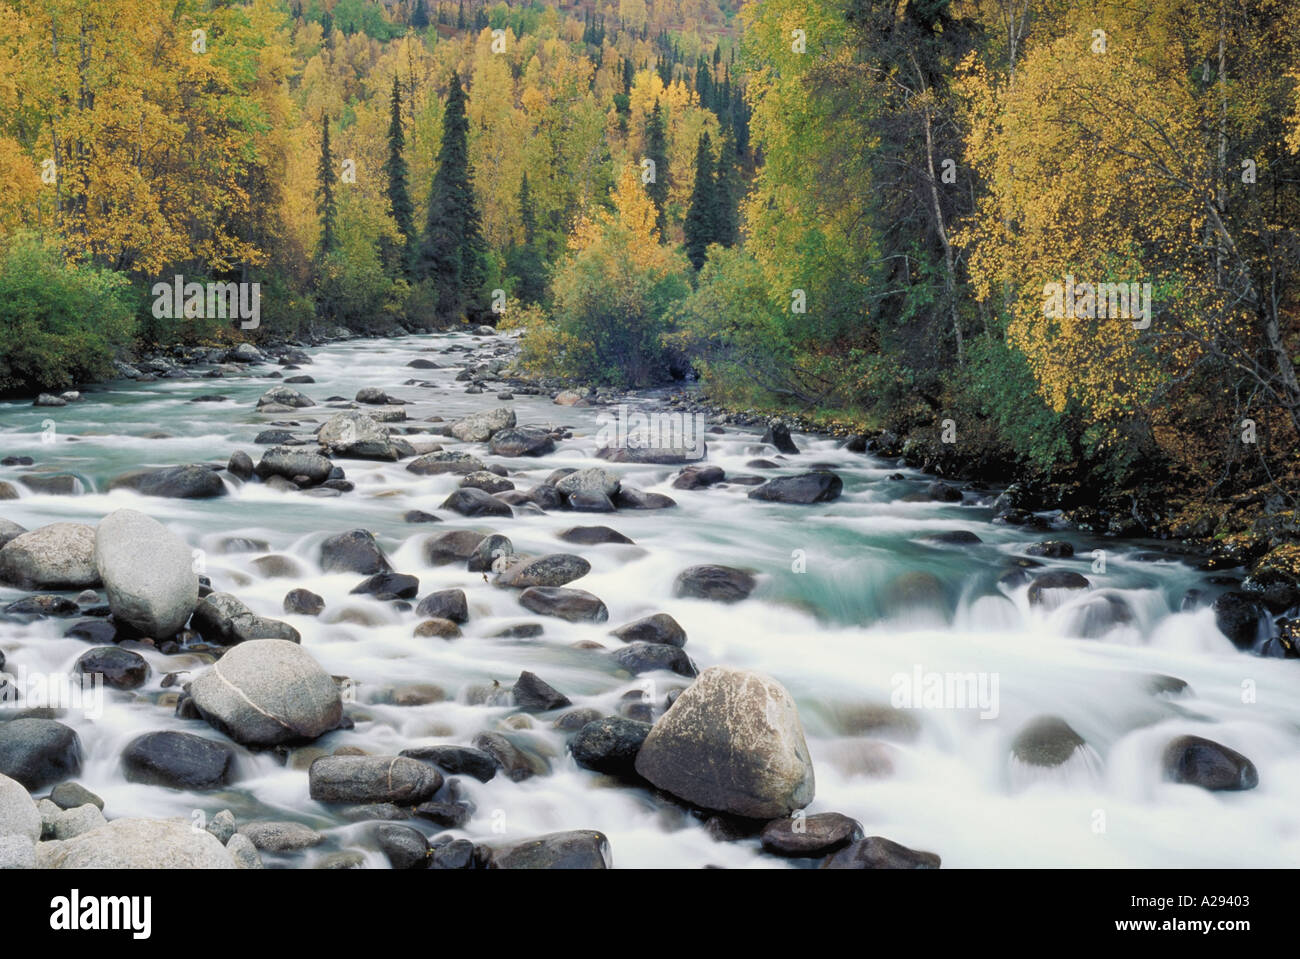 L'eau coule sur des roches dans le lit d'une rivière à l'automne feuillage entourant la rivière peu Sustina River AK Banque D'Images